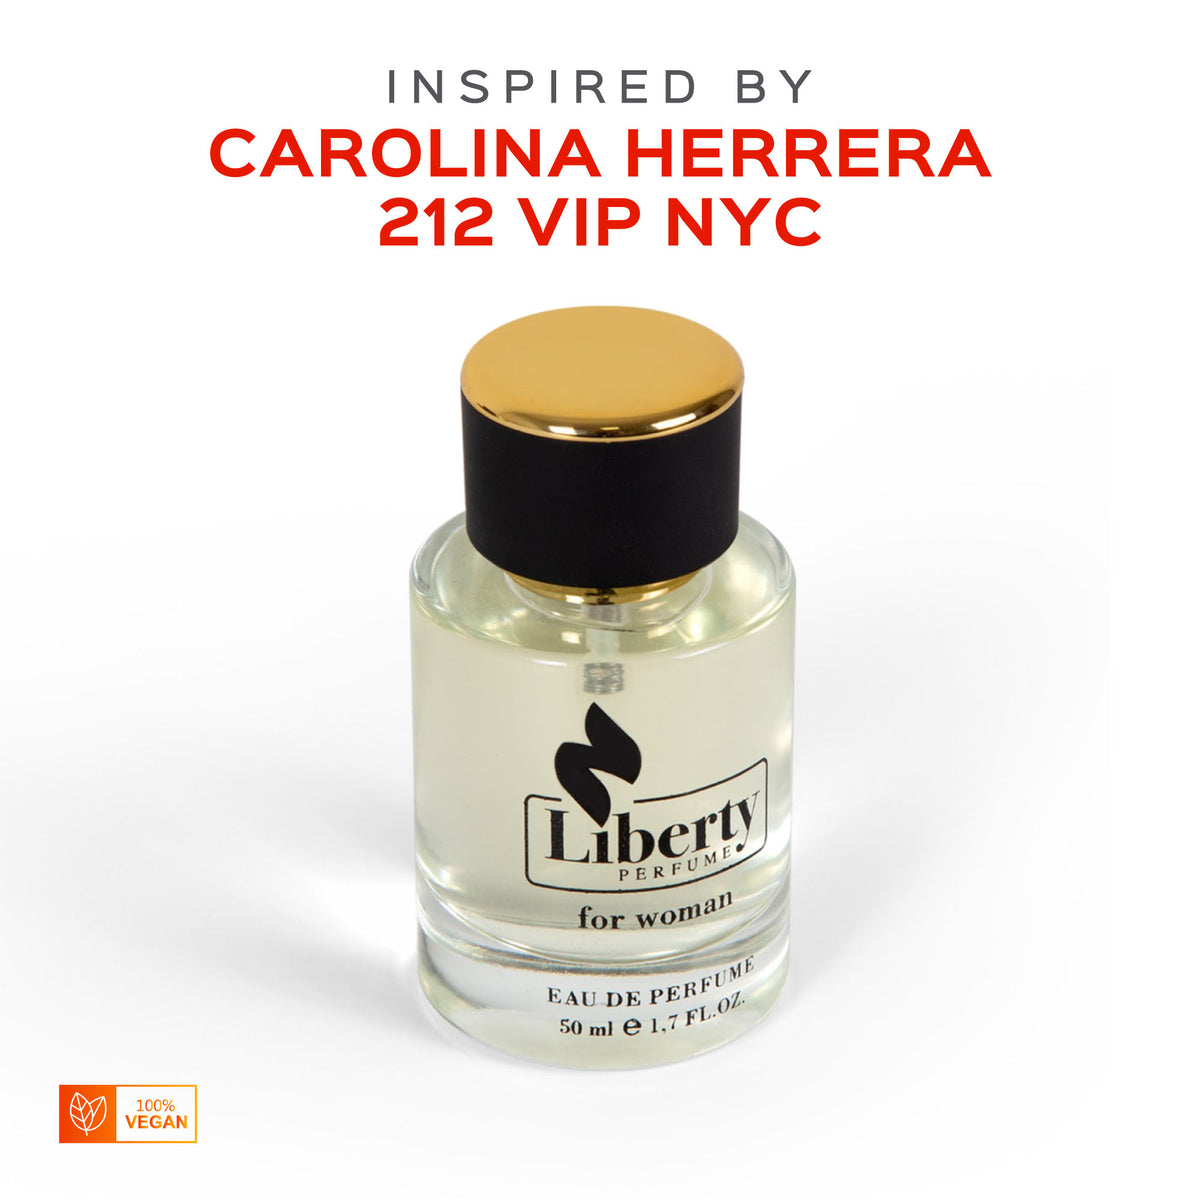 W18 for Women Perfume - Inspired by Carolina Herrera 212 Vip $39.99 –  Liberty